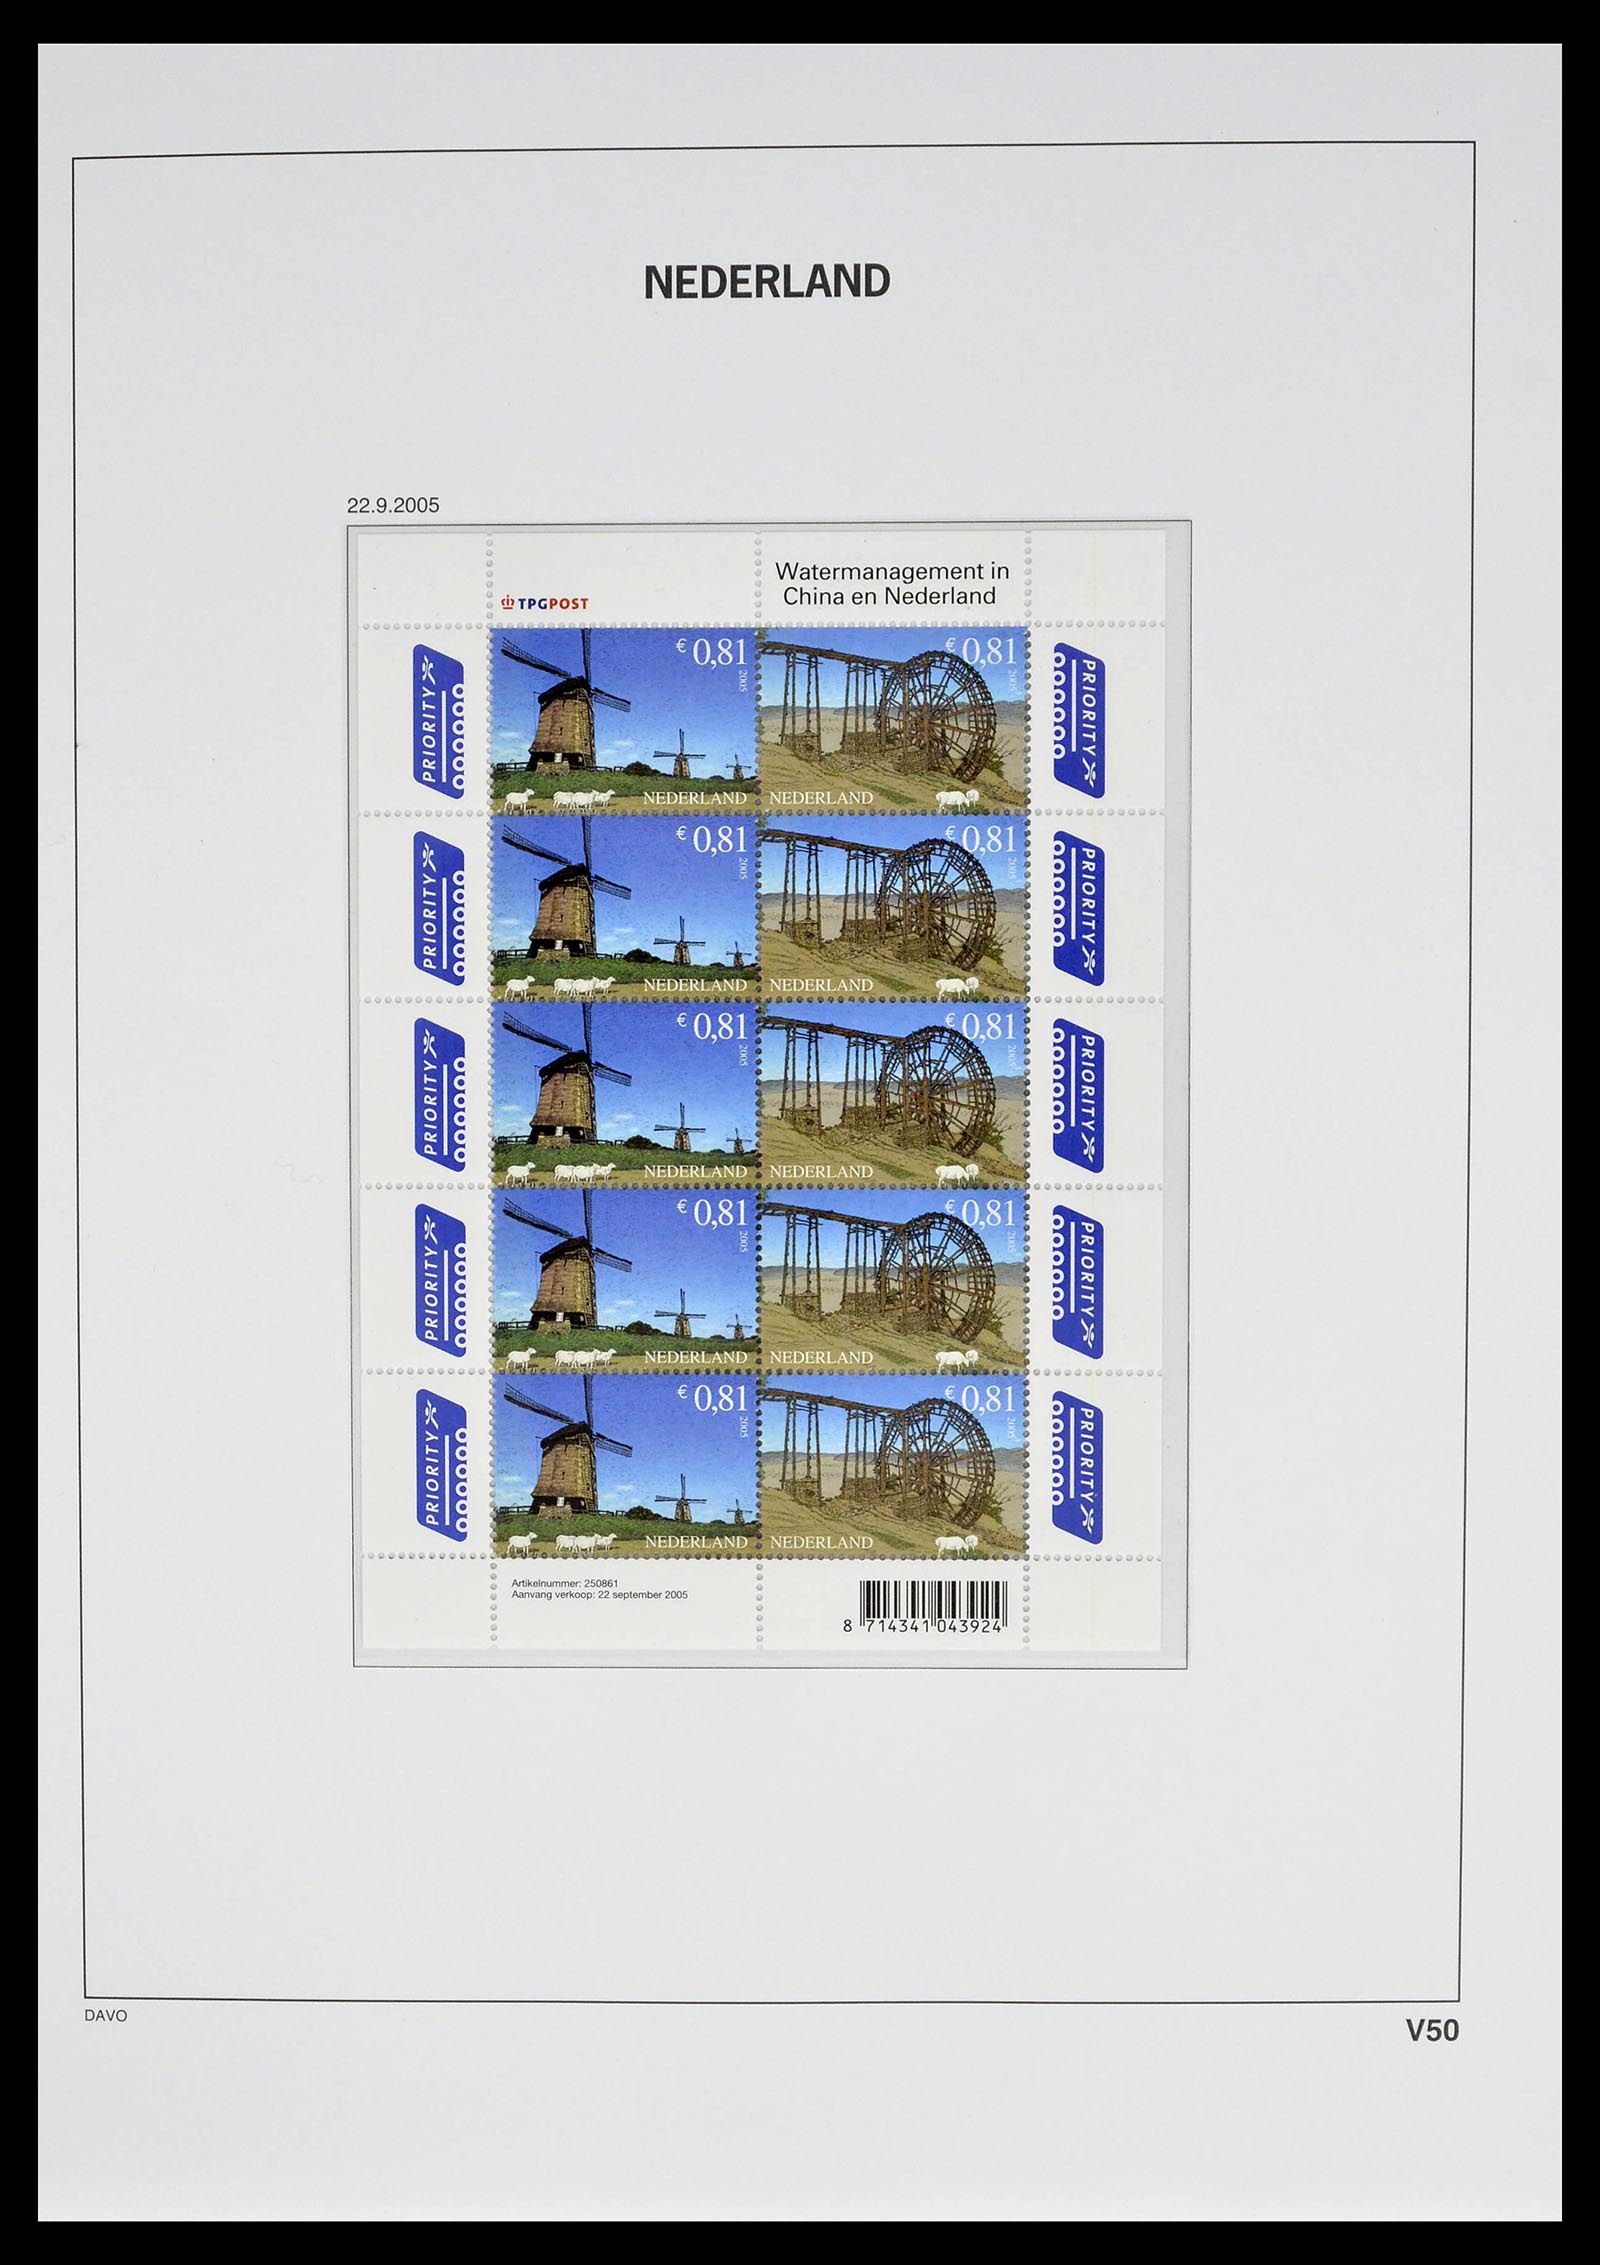 39134 0064 - Stamp collection 39134 Netherlands sheetlets 1992-2019!